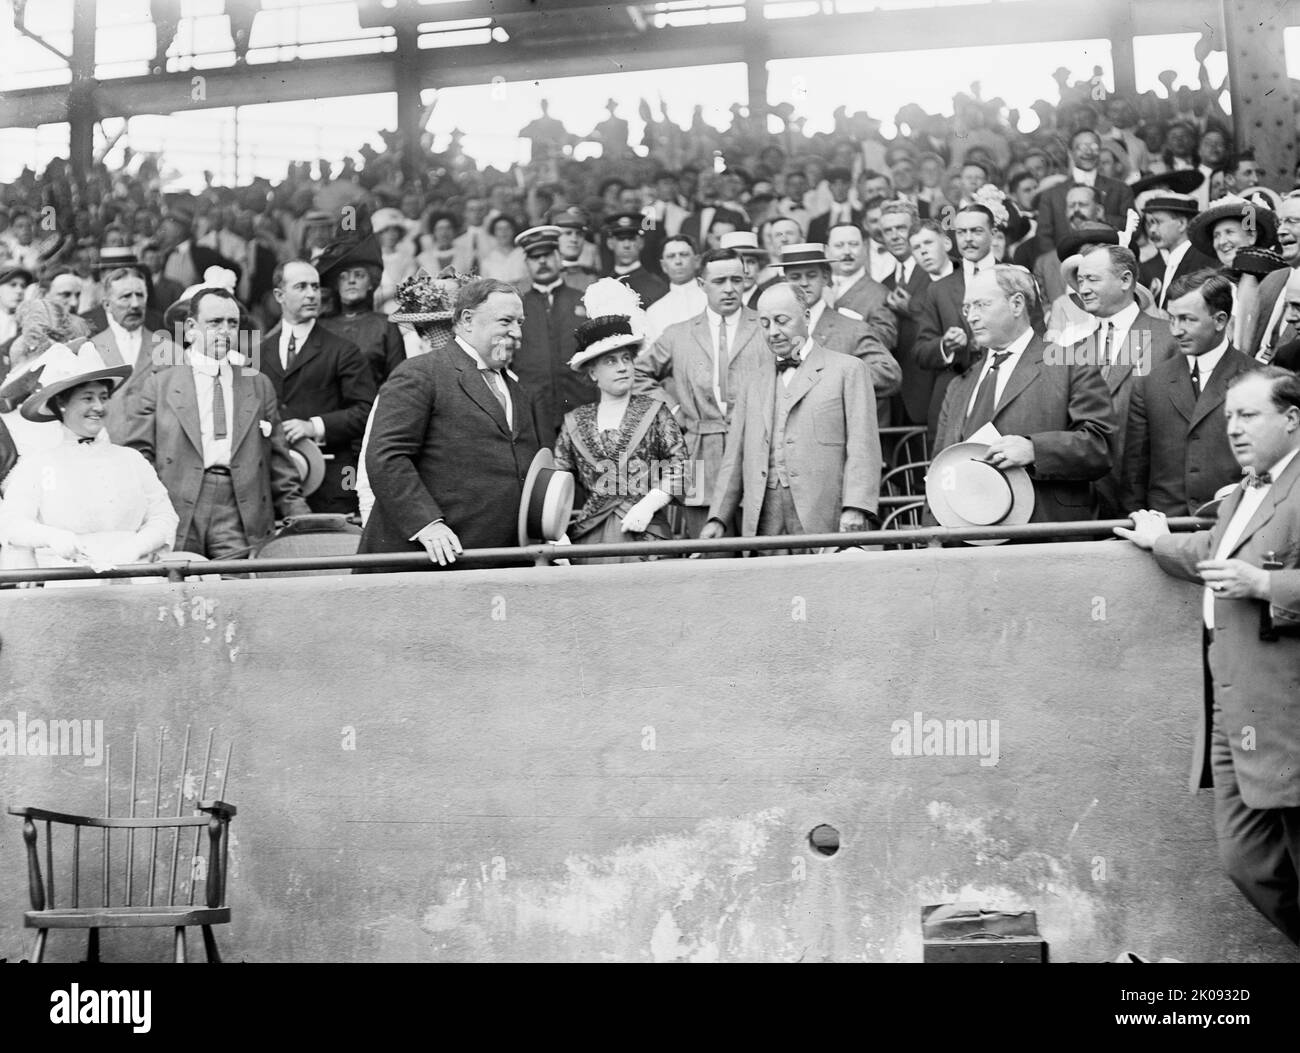 Baseball, professionnel - de gauche à droite: Taft; Mme KNOX; sec. P.C. KNOX, vice-président Sherman, Mme Taft, arrière gauche du président, 1912. Banque D'Images